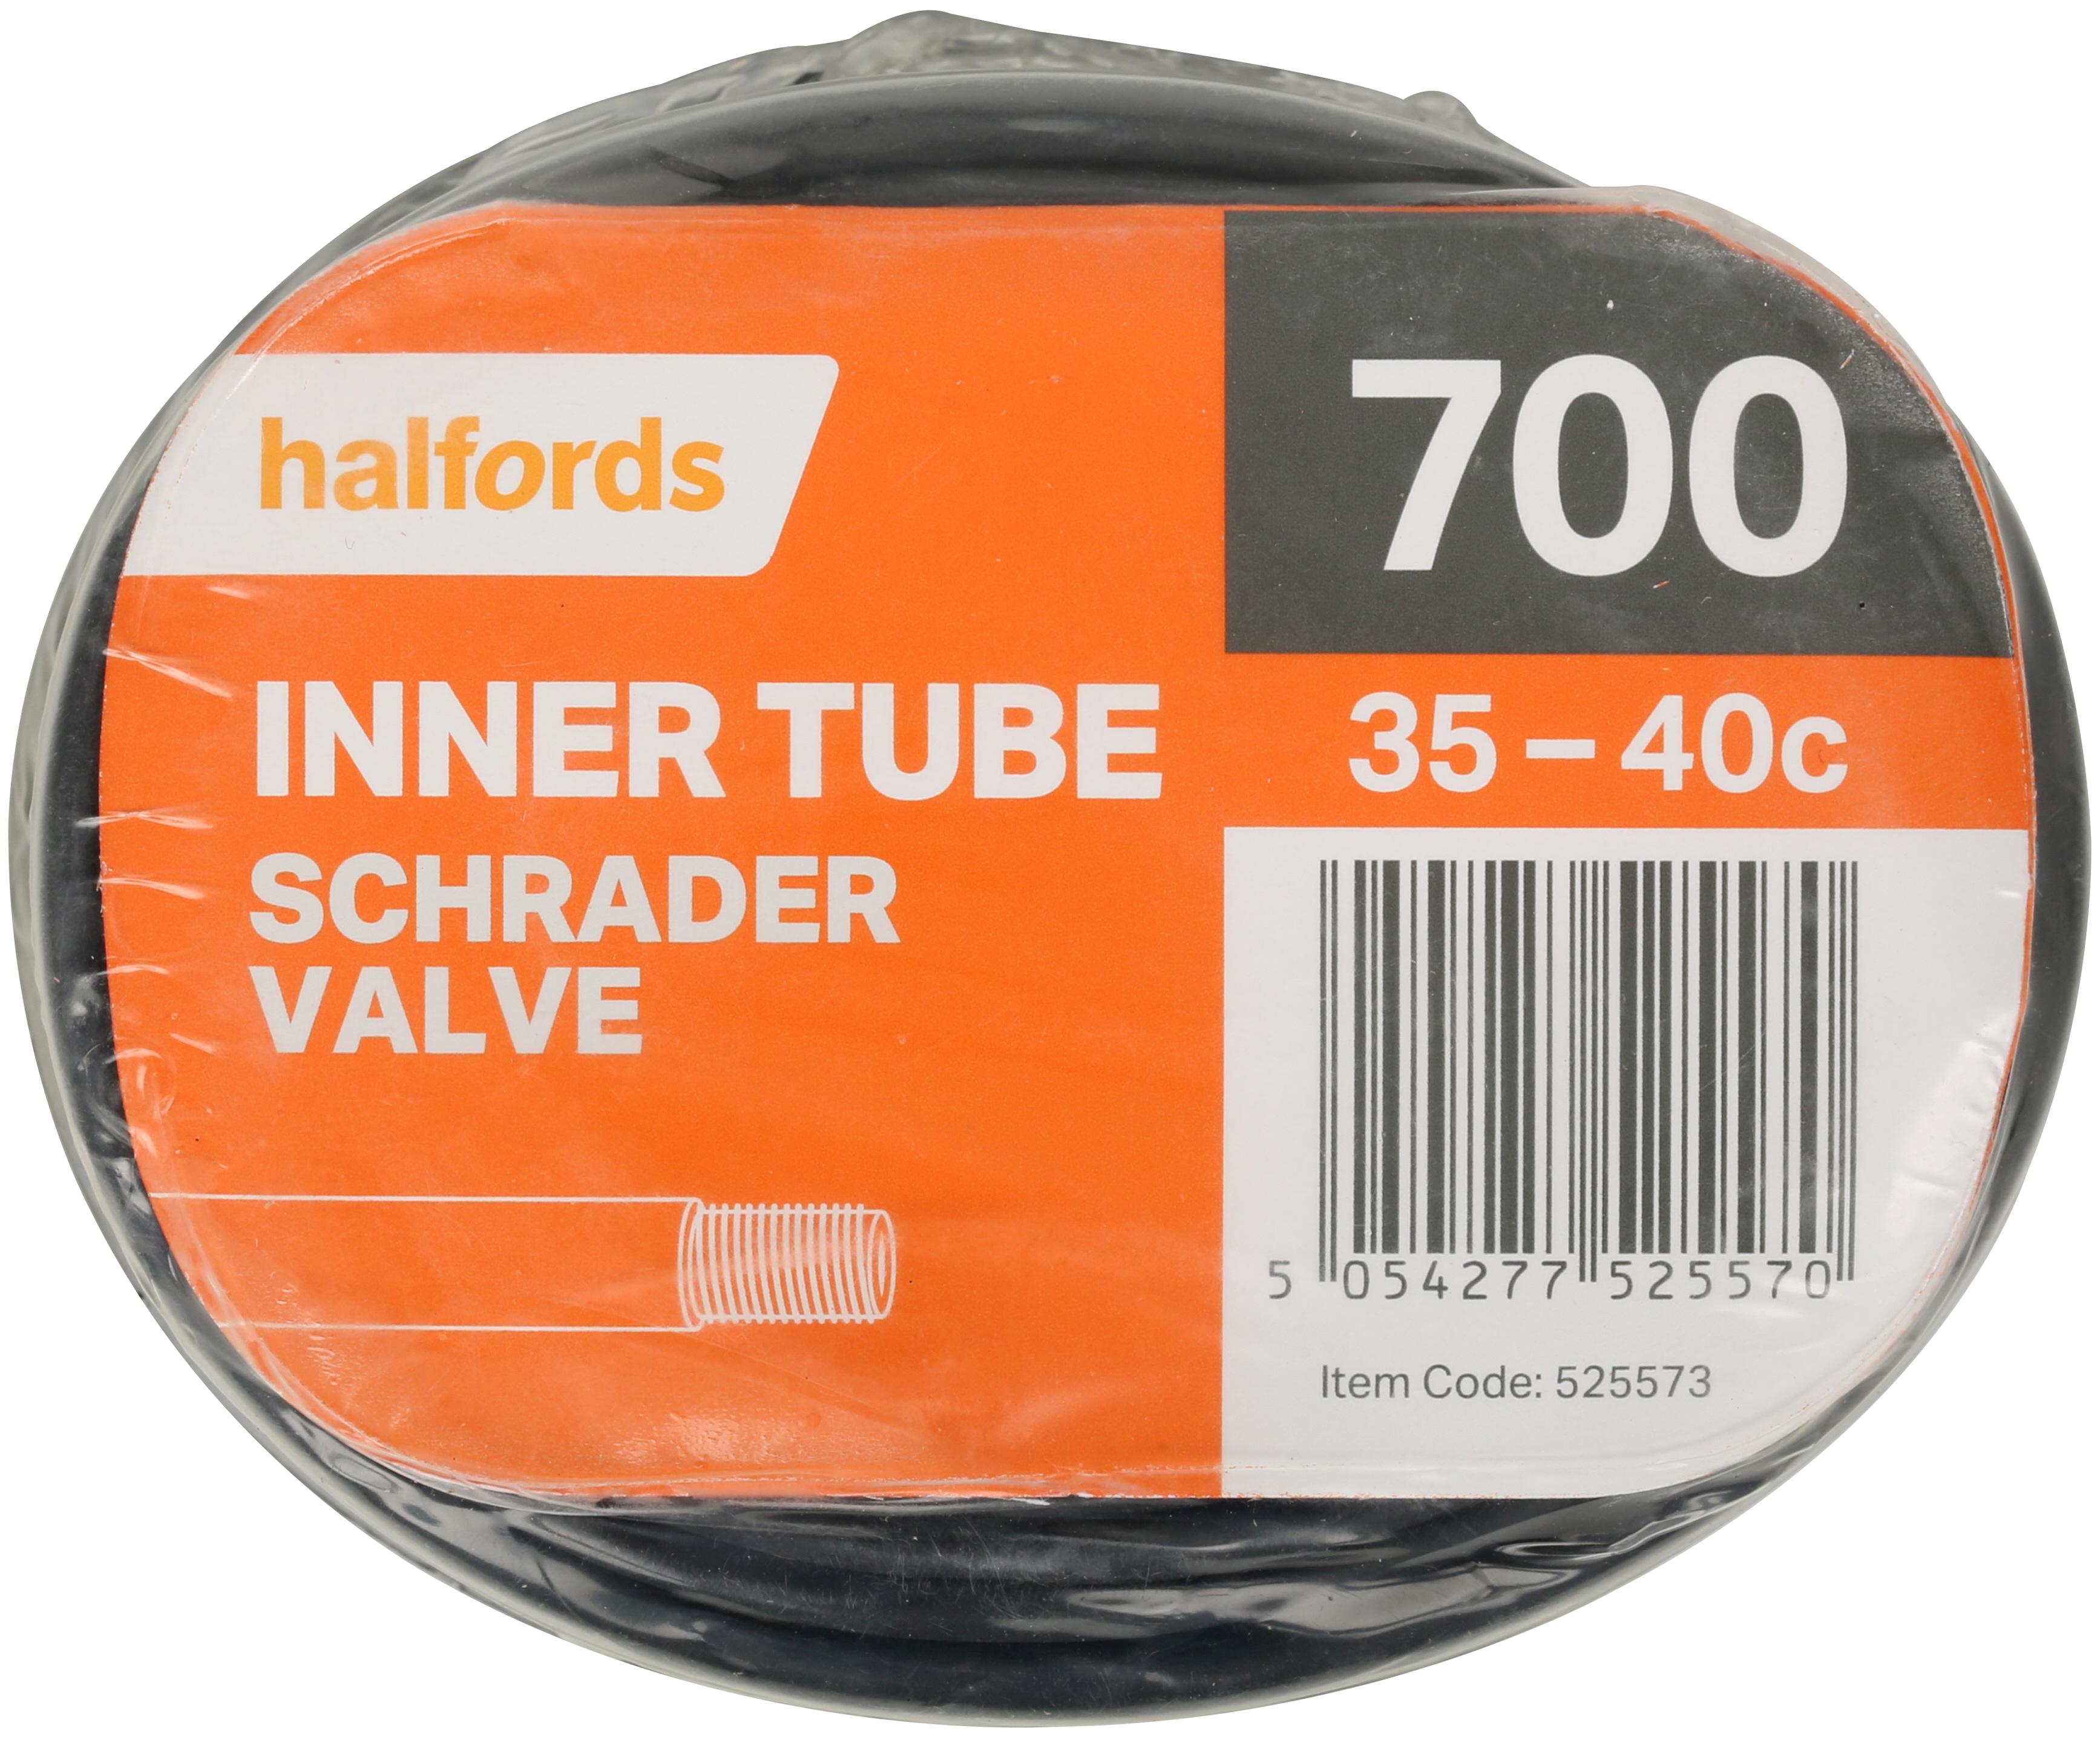 halfords inner tubes